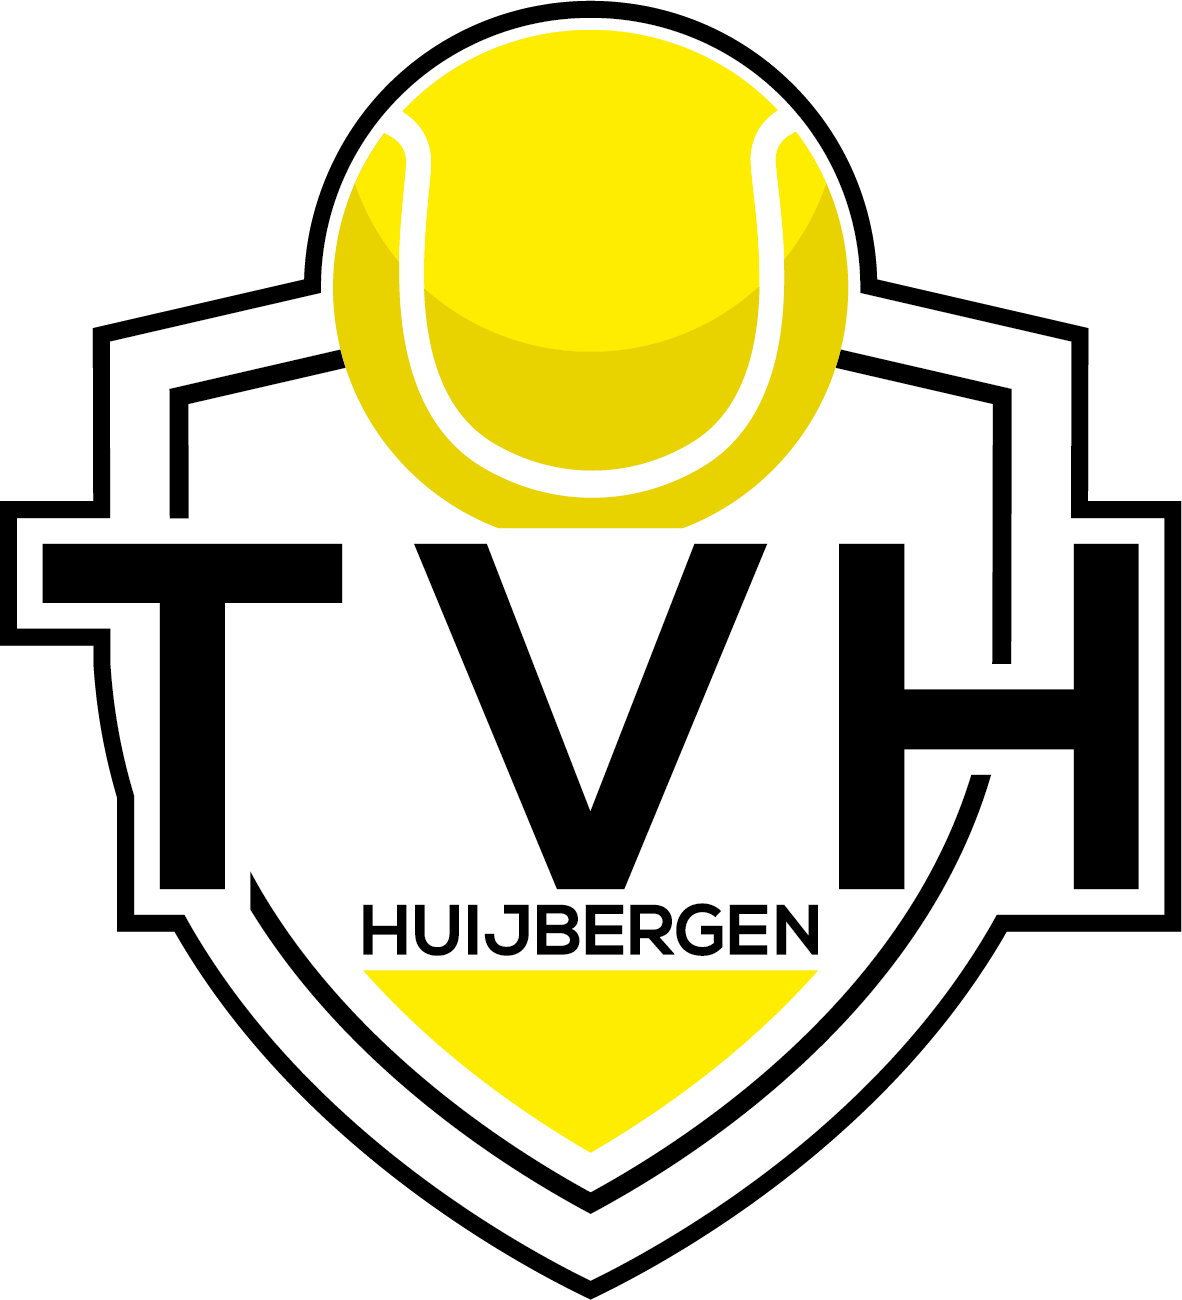 T.V. Huijbergen